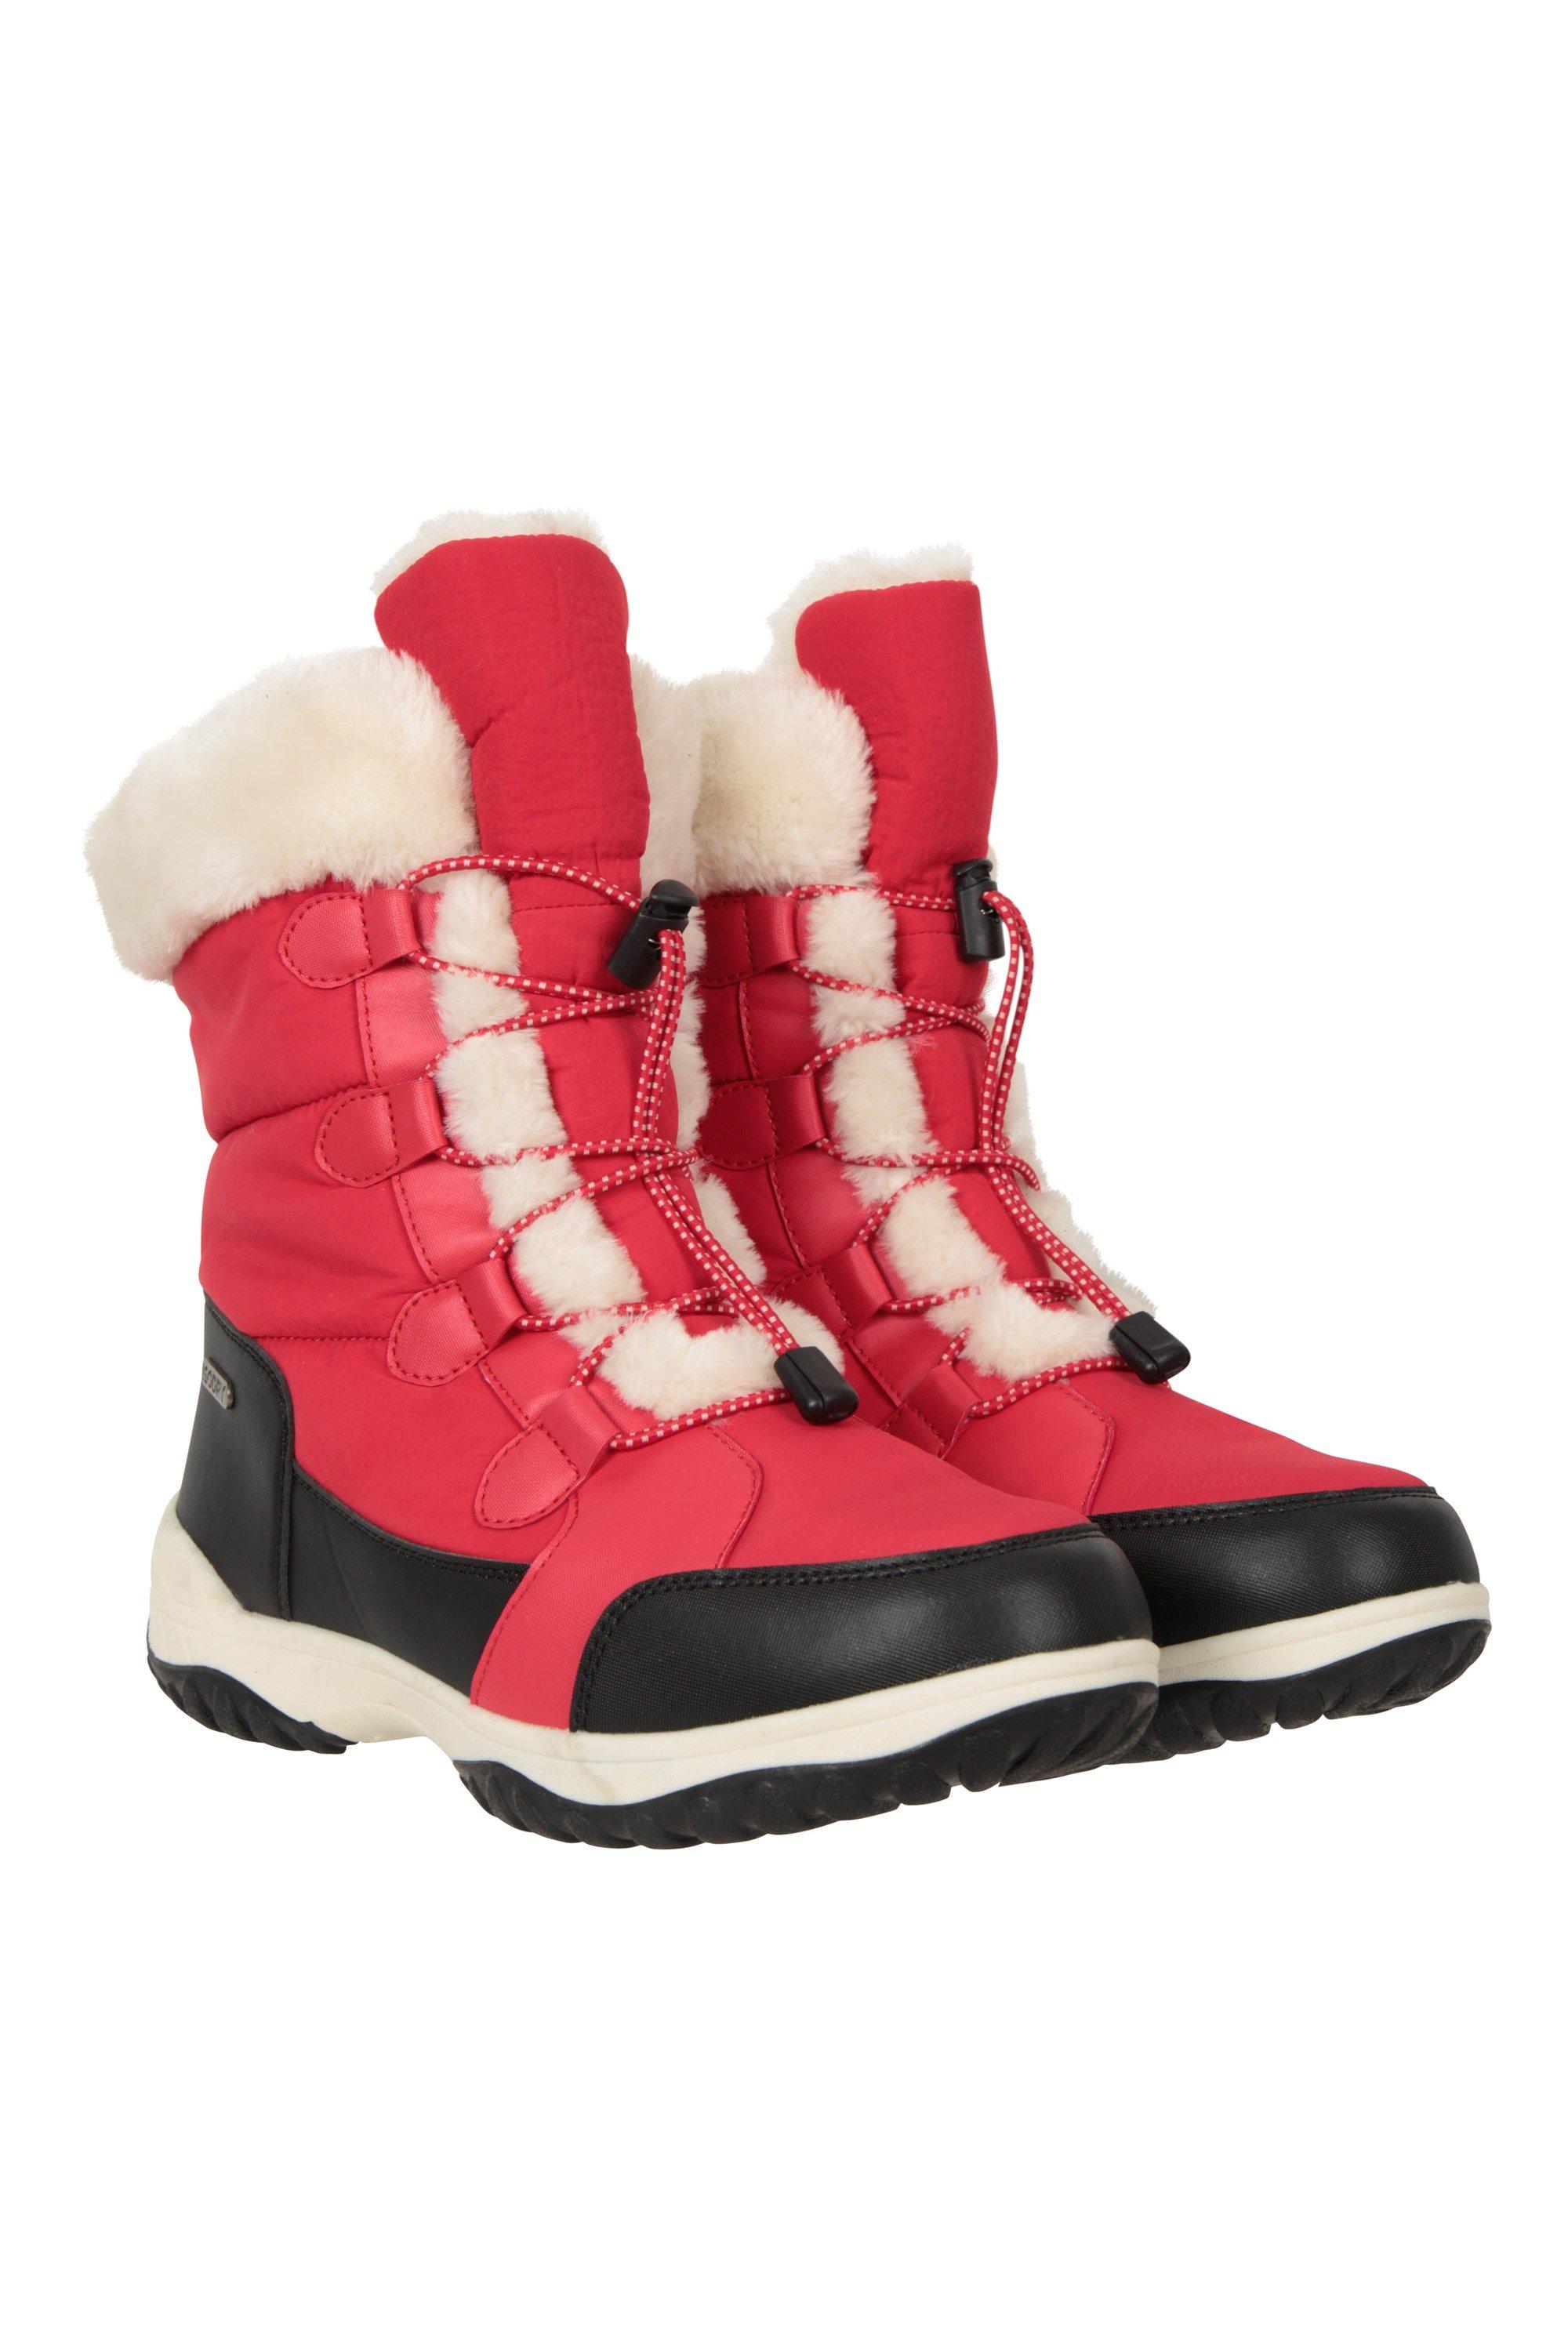 Snowflake Boots Снегозащитные адаптивные лыжные ботинки Mountain Warehouse, красный